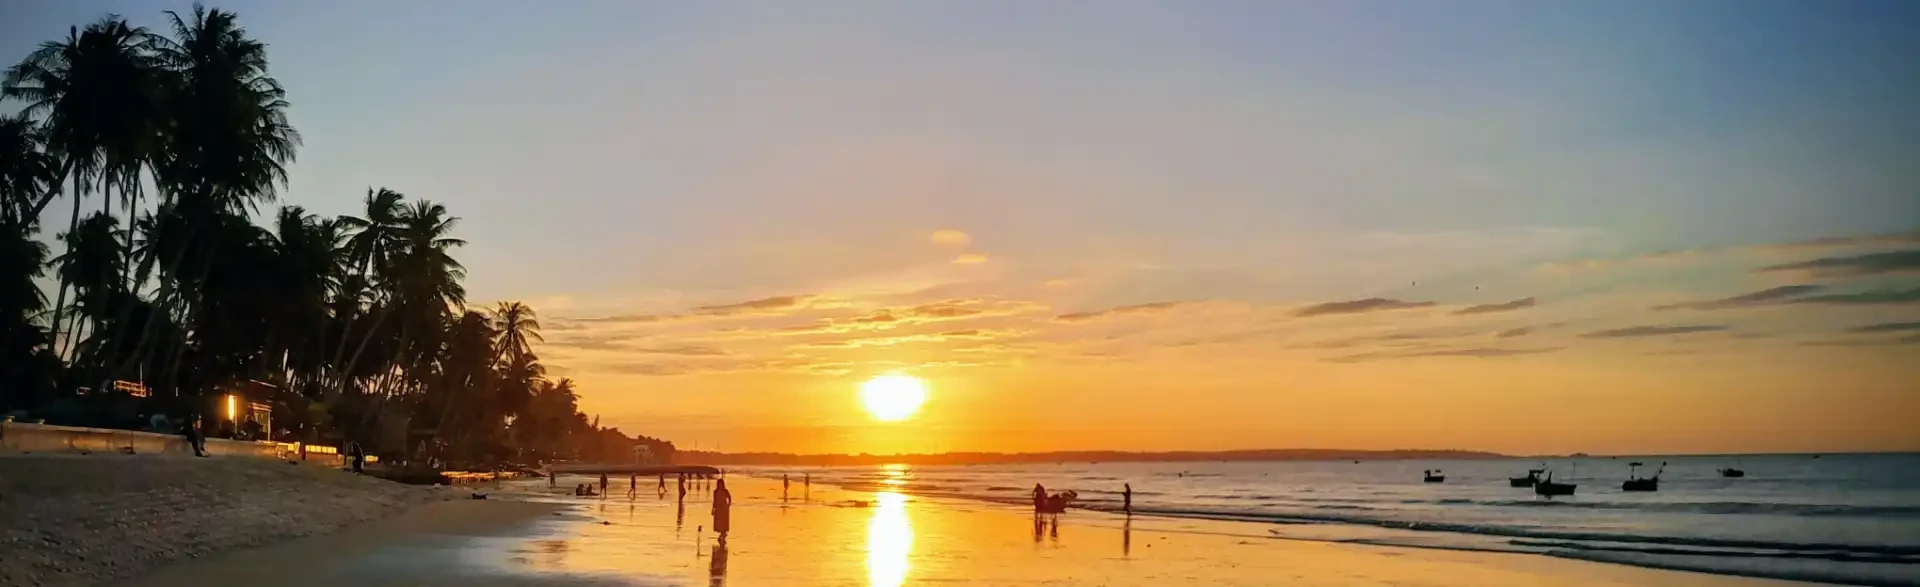 Sonnenaufgang am Strand von Mui Ne